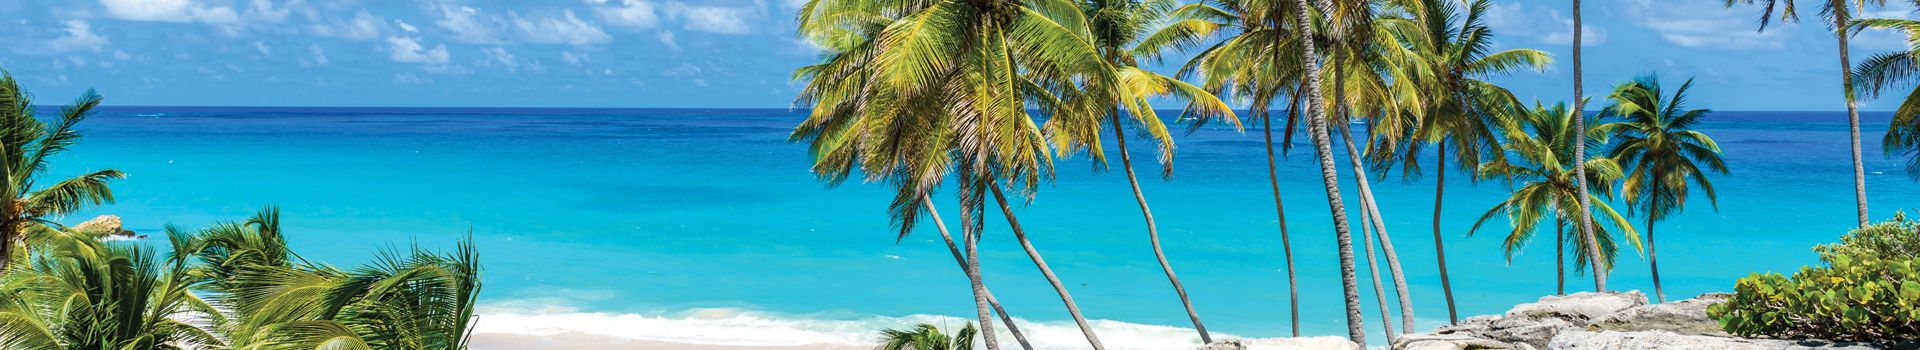 Barbados Holidays - palm tree on beach